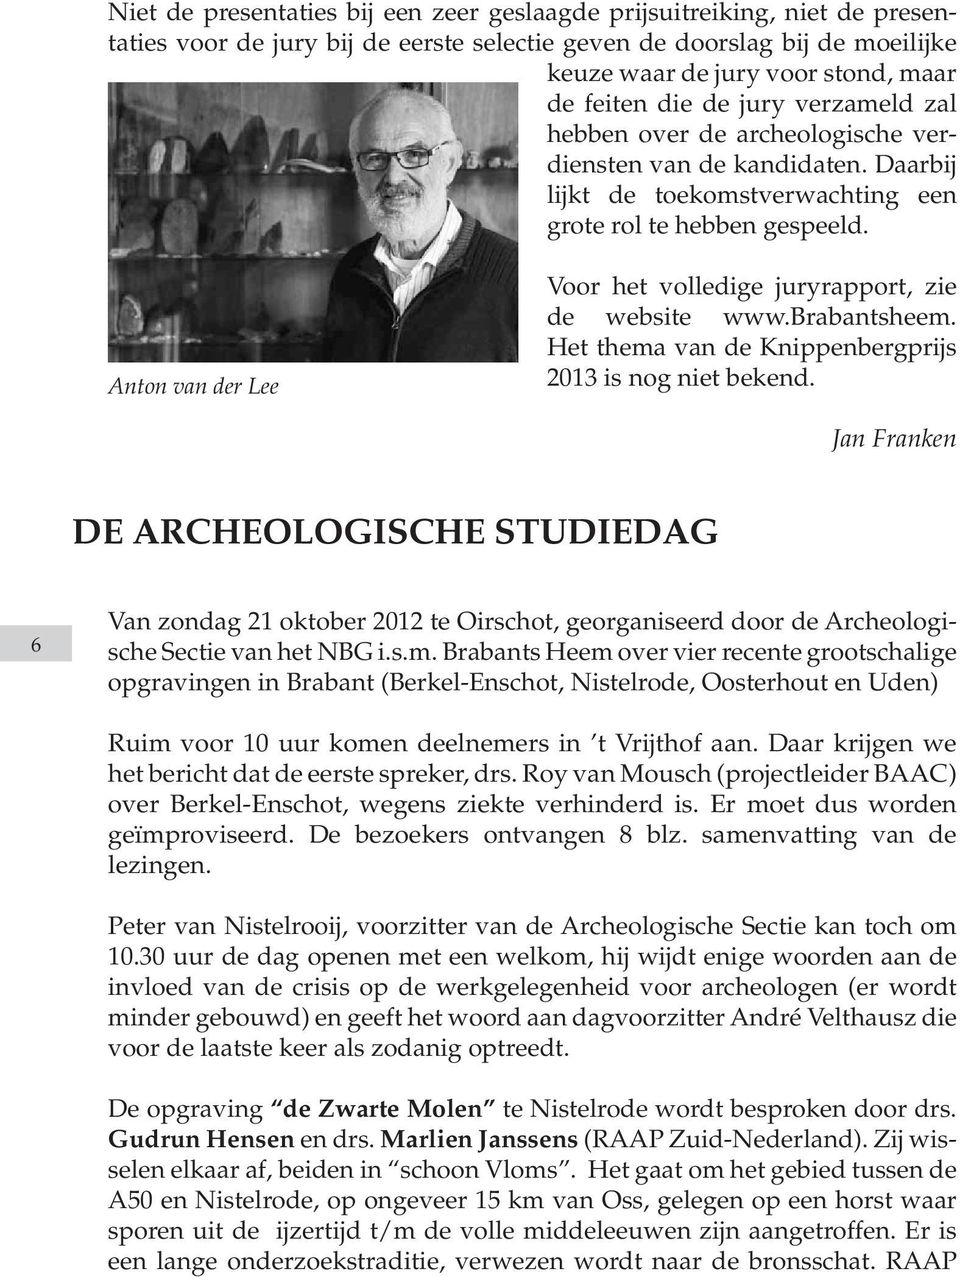 Anton van der Lee Voor het volledige juryrapport, zie de website www.brabantsheem. Het thema van de Knippenbergprijs 2013 is nog niet bekend.